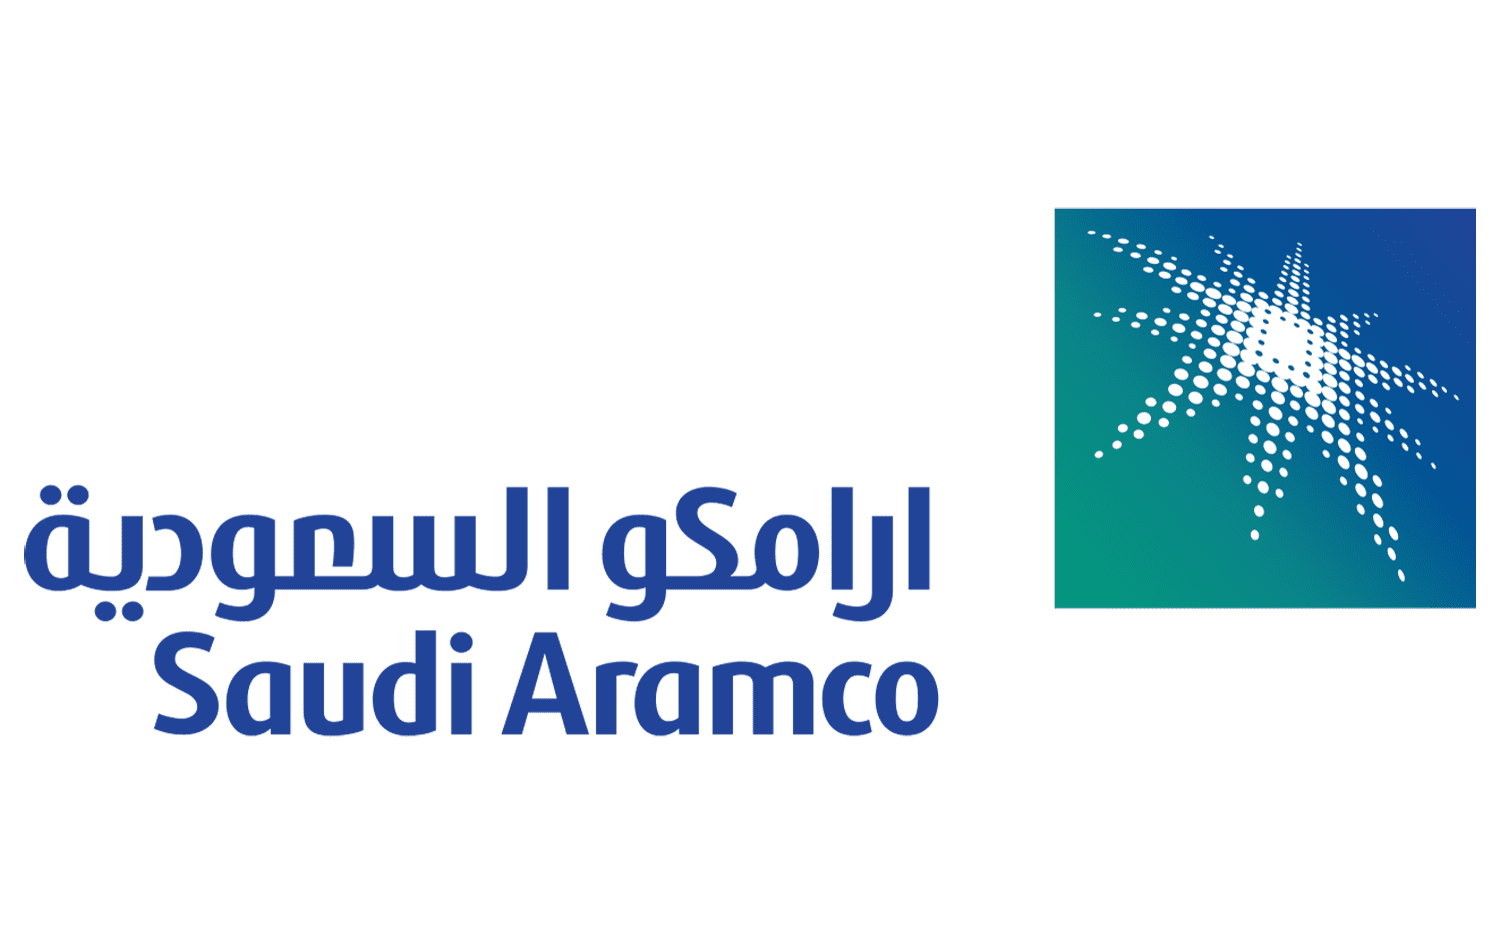 Saudi-Aramco